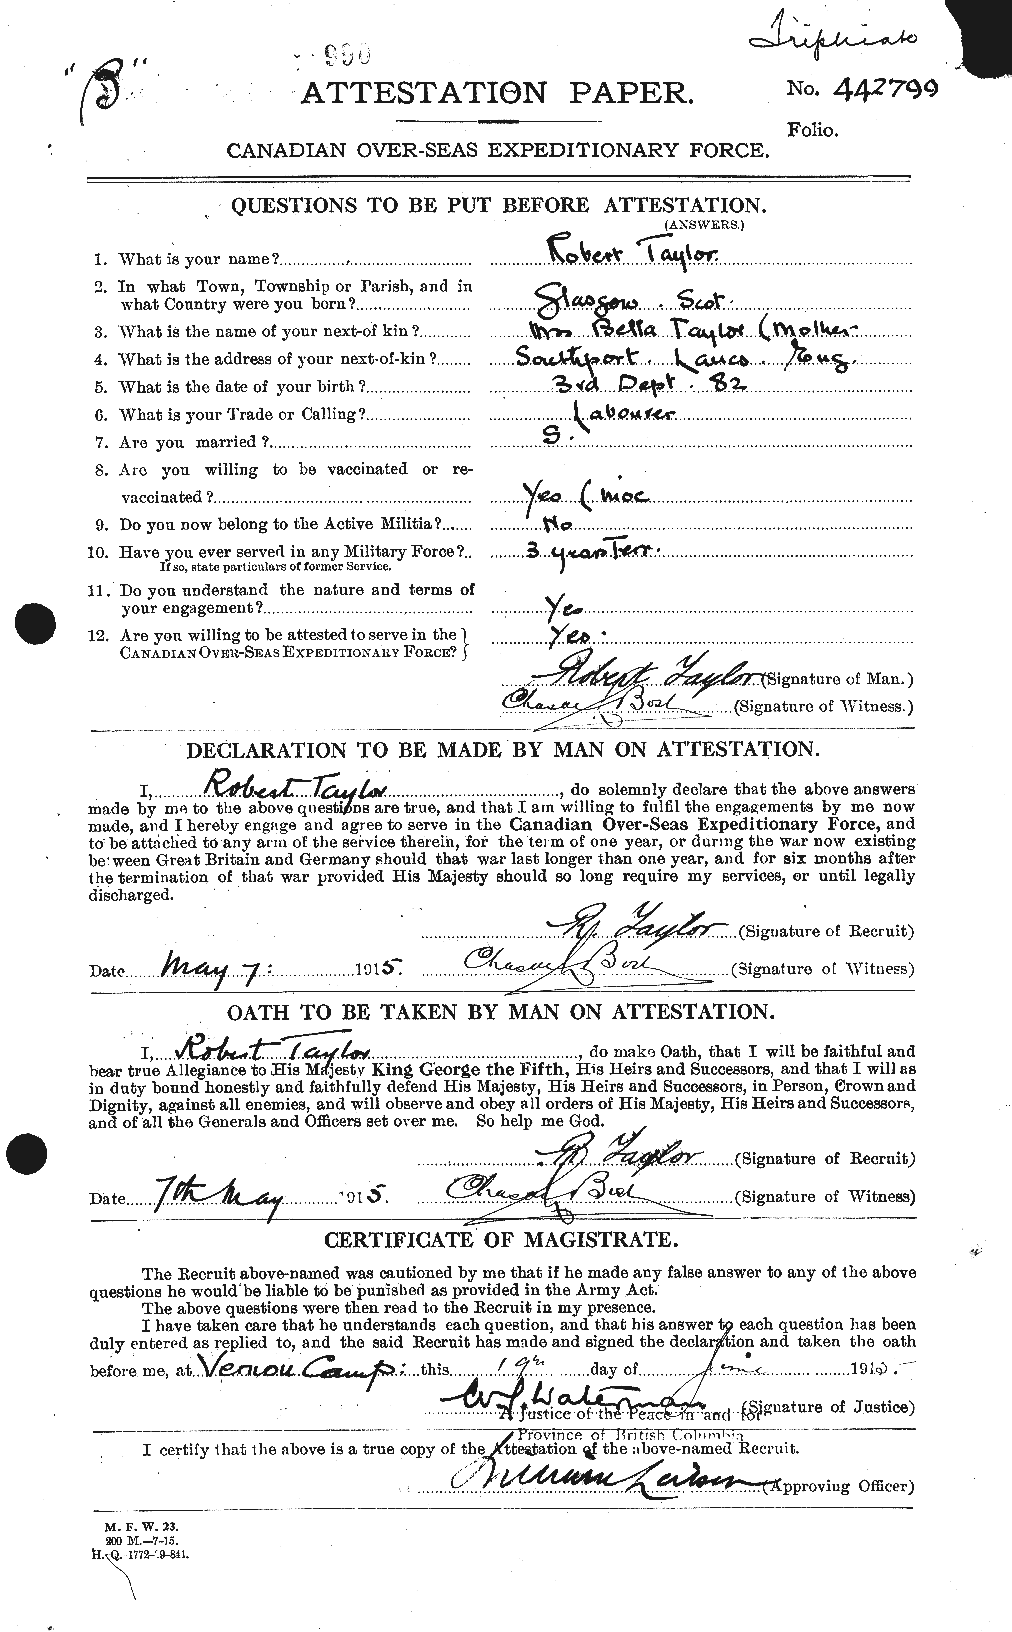 Dossiers du Personnel de la Première Guerre mondiale - CEC 627425a